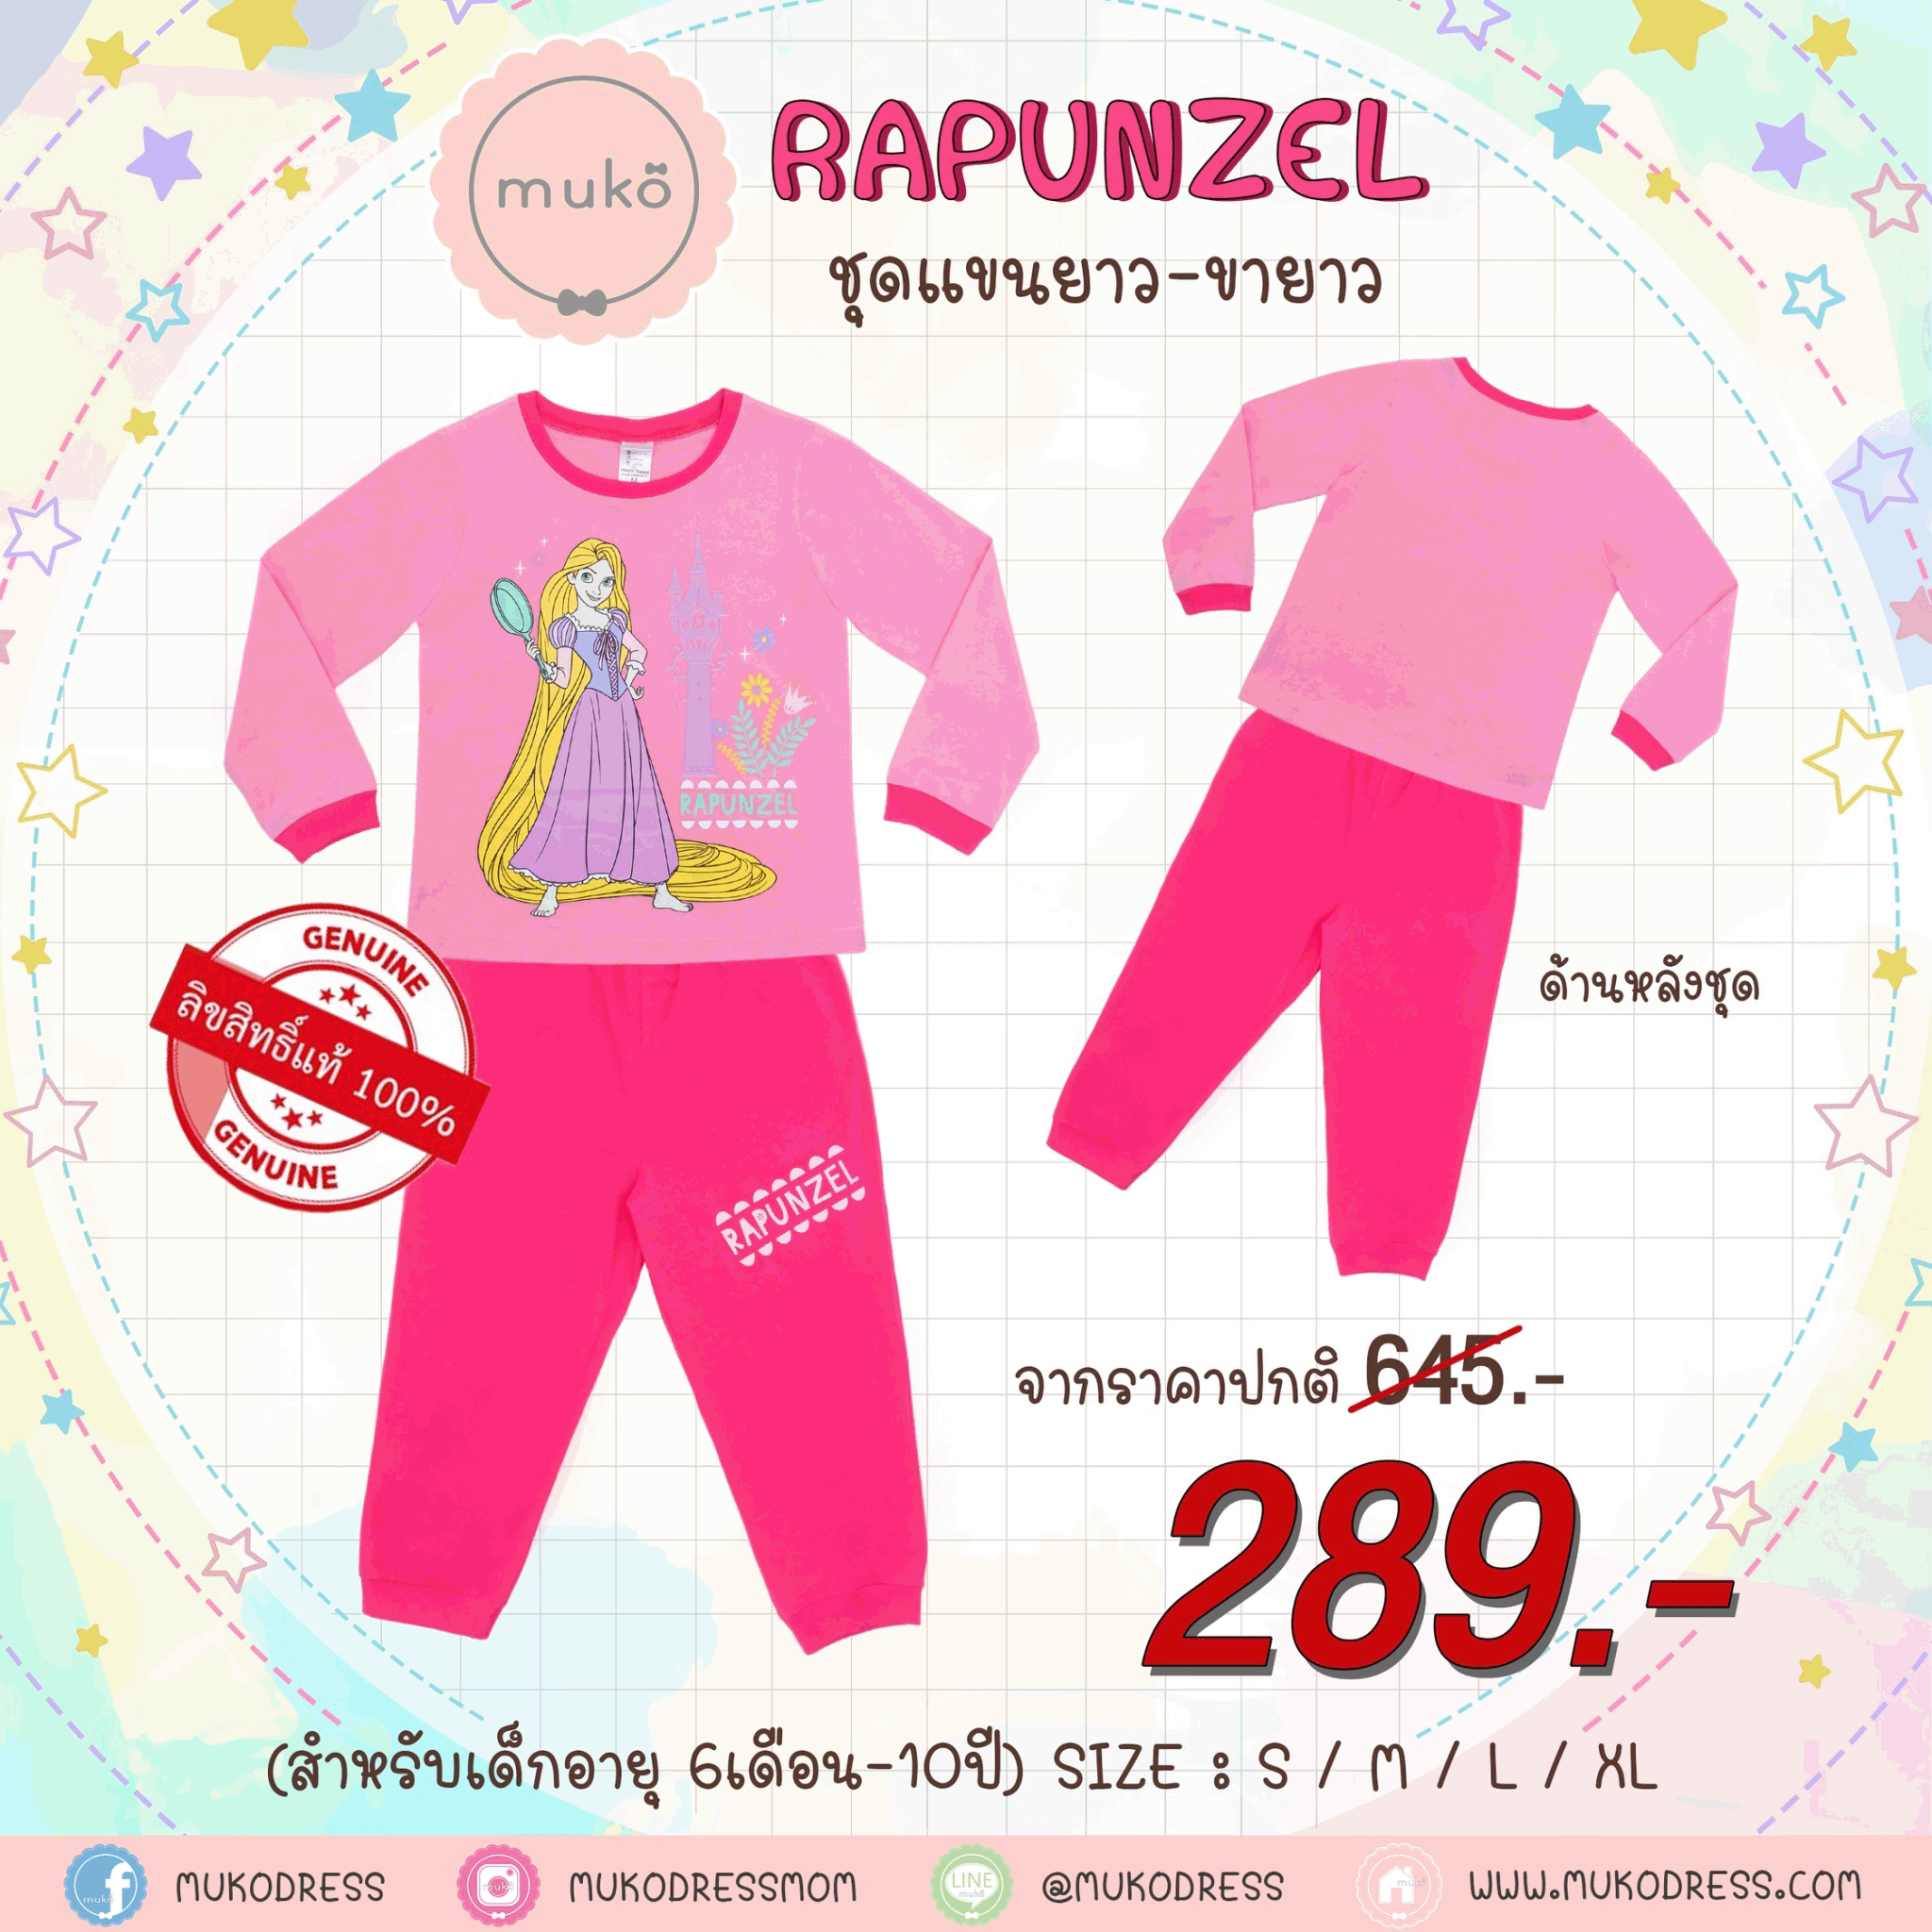 ชุดเด็ก 7-10 ขวบ แขนยาว-ขายาว (Size XL) DPC127-10-XL-Pink XL ลาย เจ้าหญิงราพันเซล Rapunzel สีชมพู